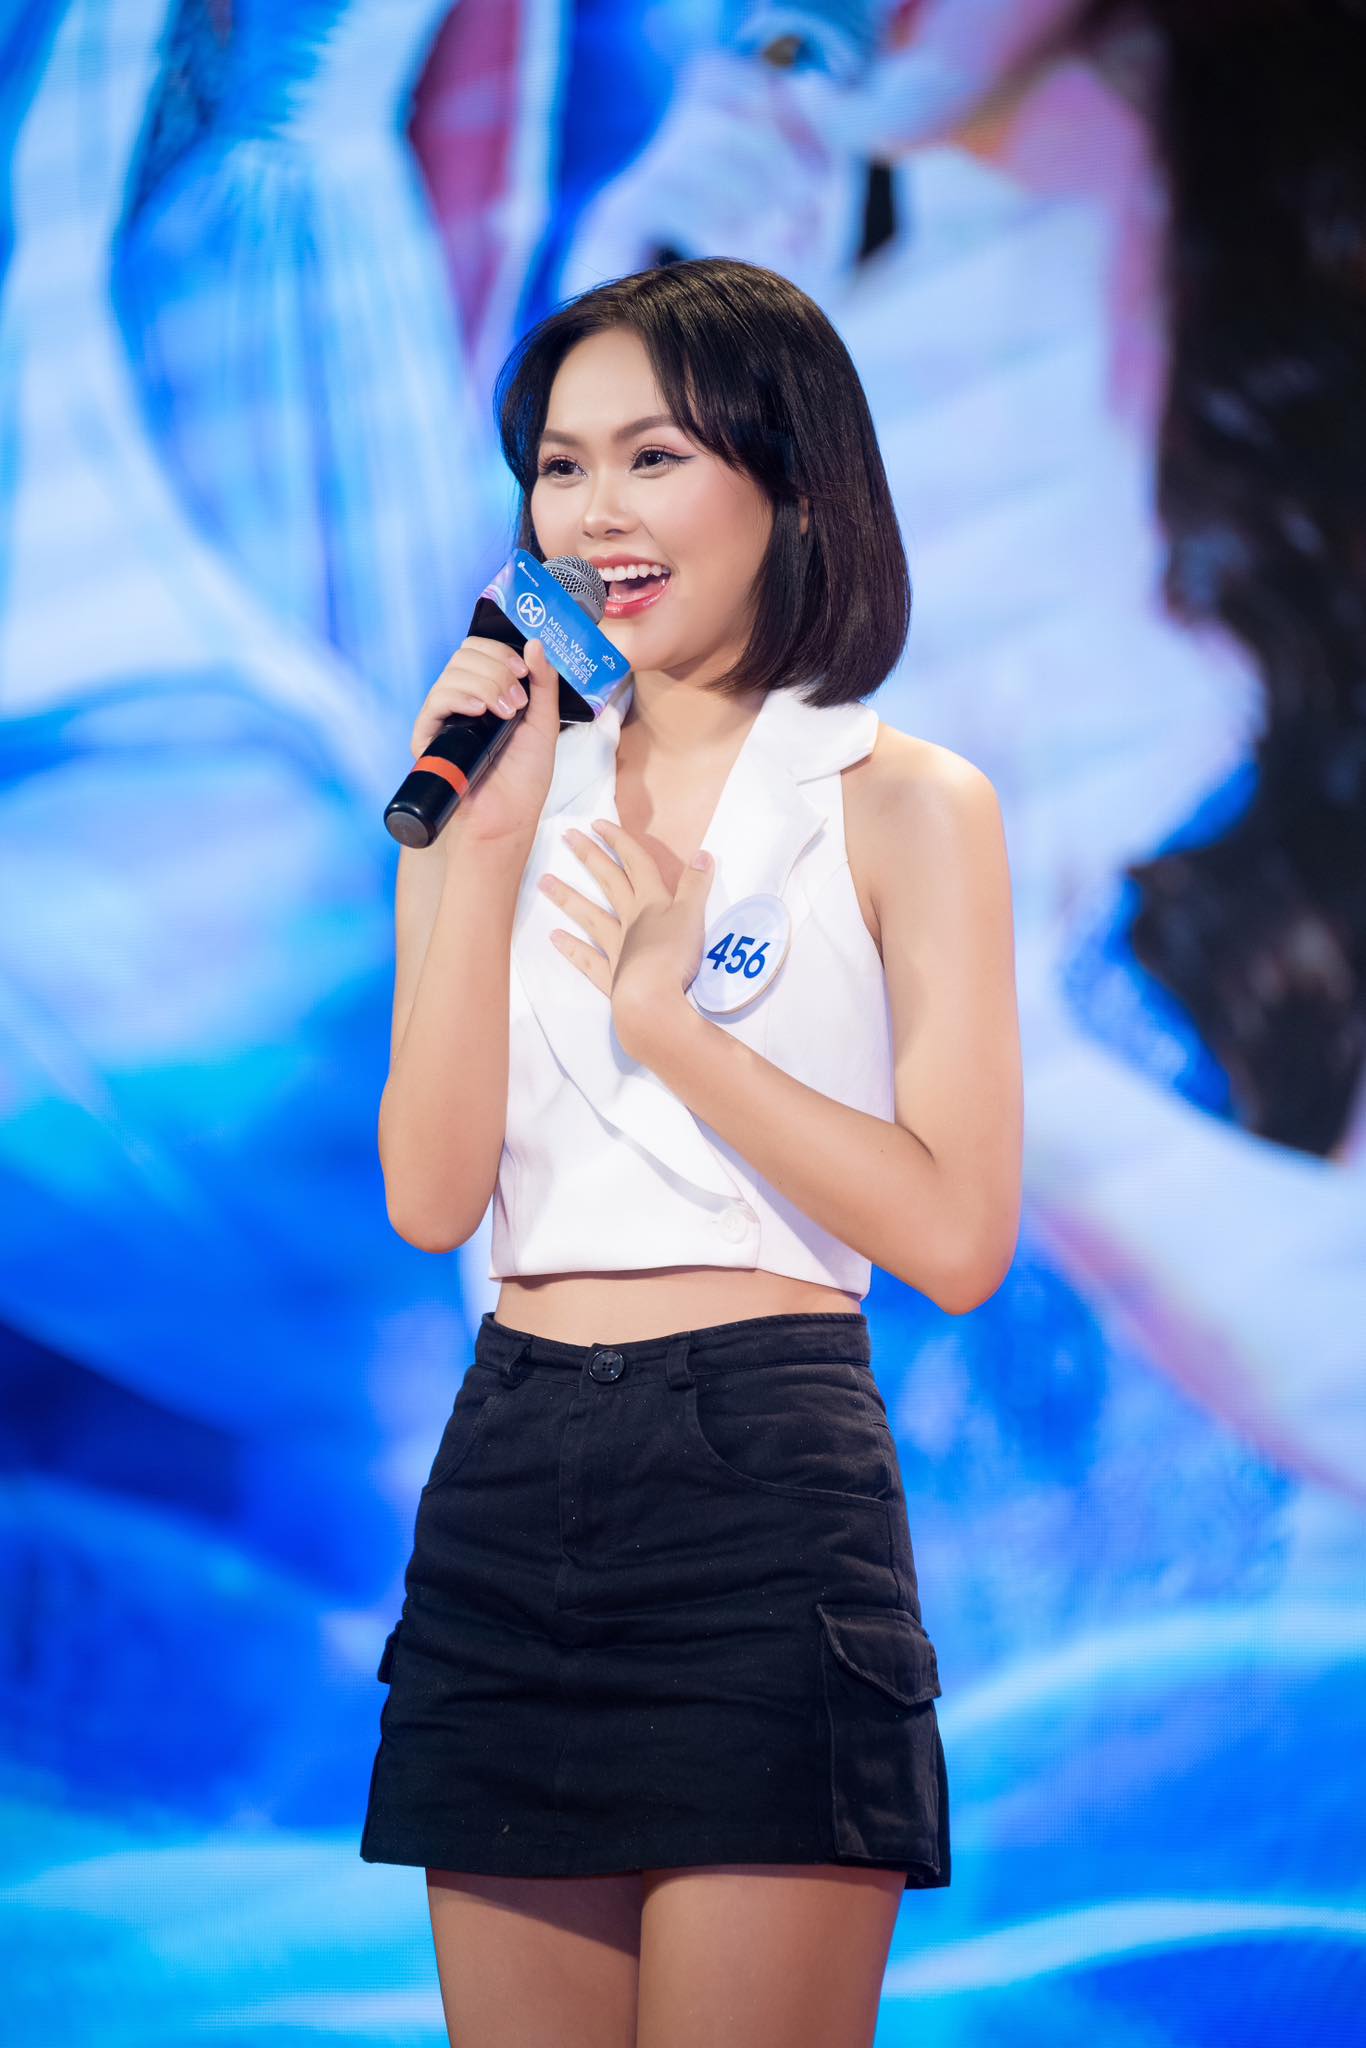 Hot girl 'Giọng ải giọng ai' giảm 6kg thi Miss World Vietnam 2023 - Ảnh 3.